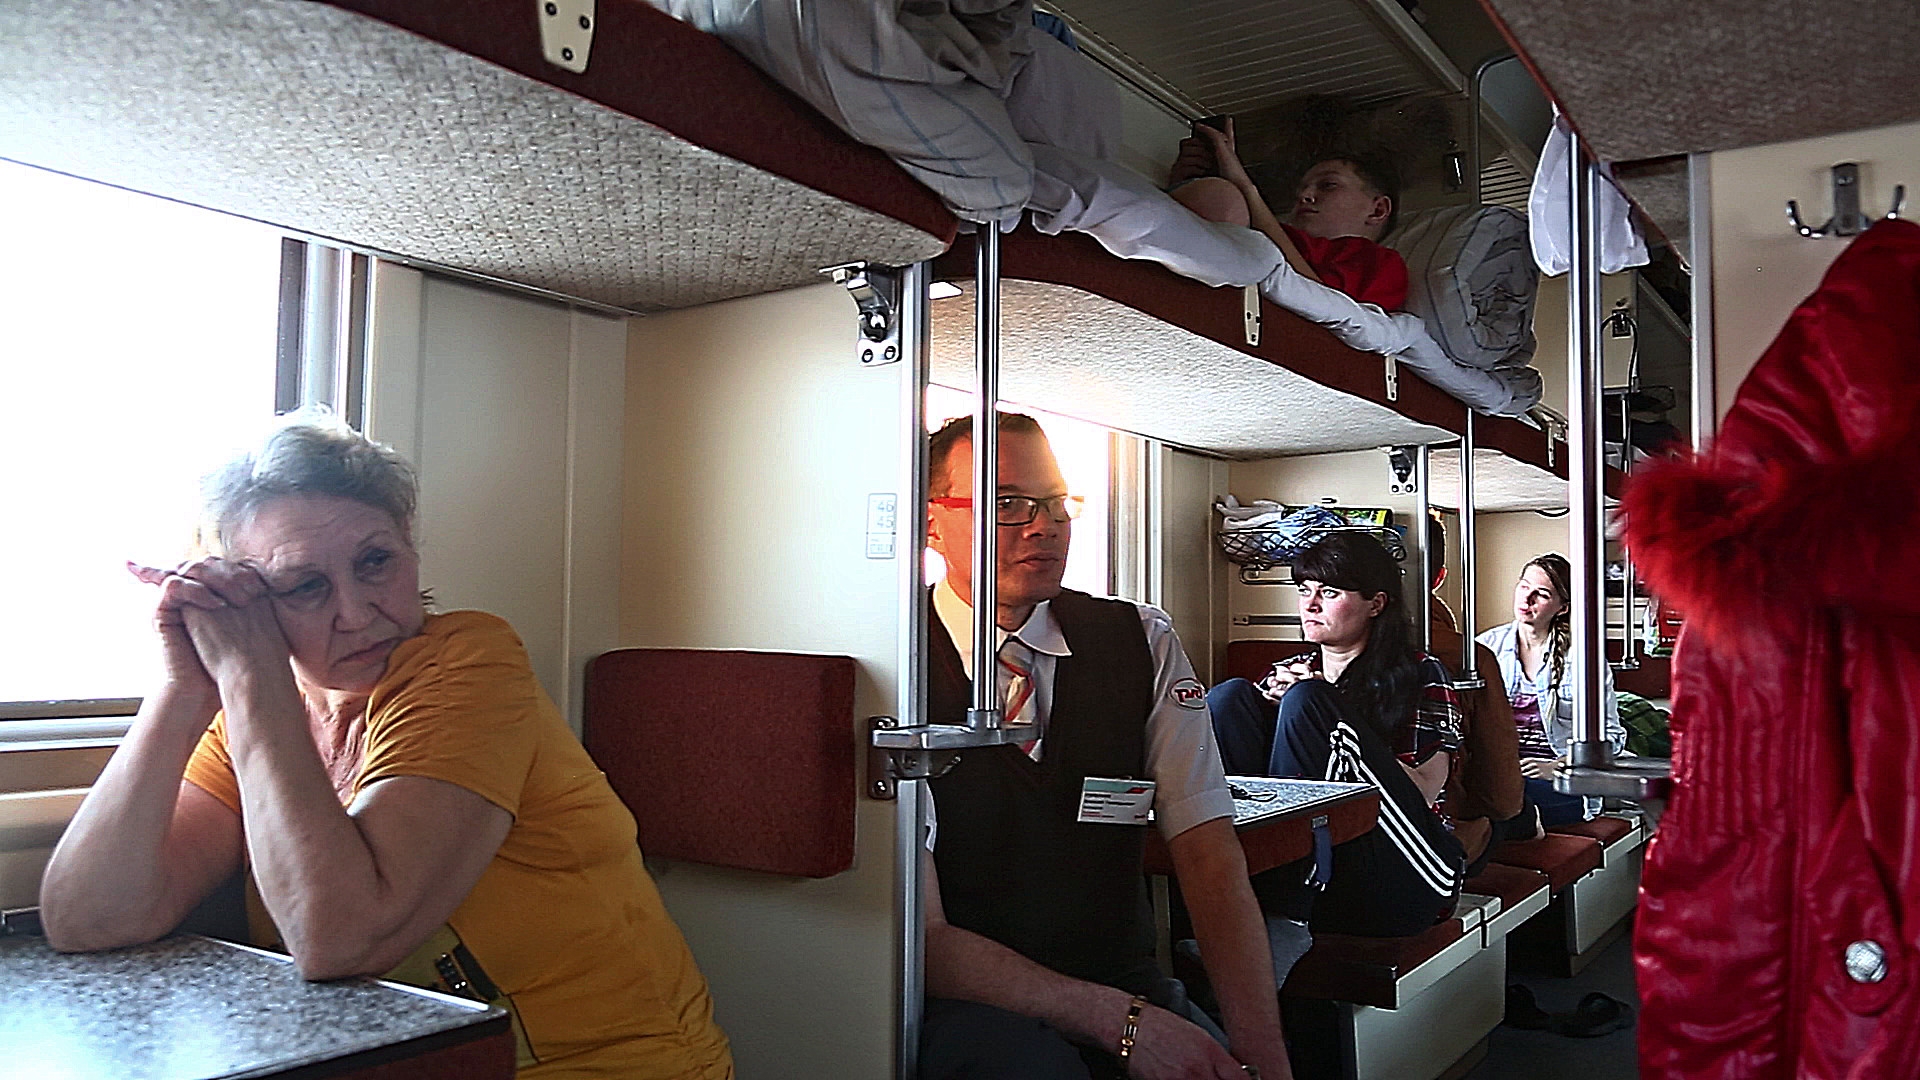 Сел в купе. Плацкарт в поезде. Плацкарт в поезде фото. Плацкарт пассажиры. Поезд внутри с людьми.